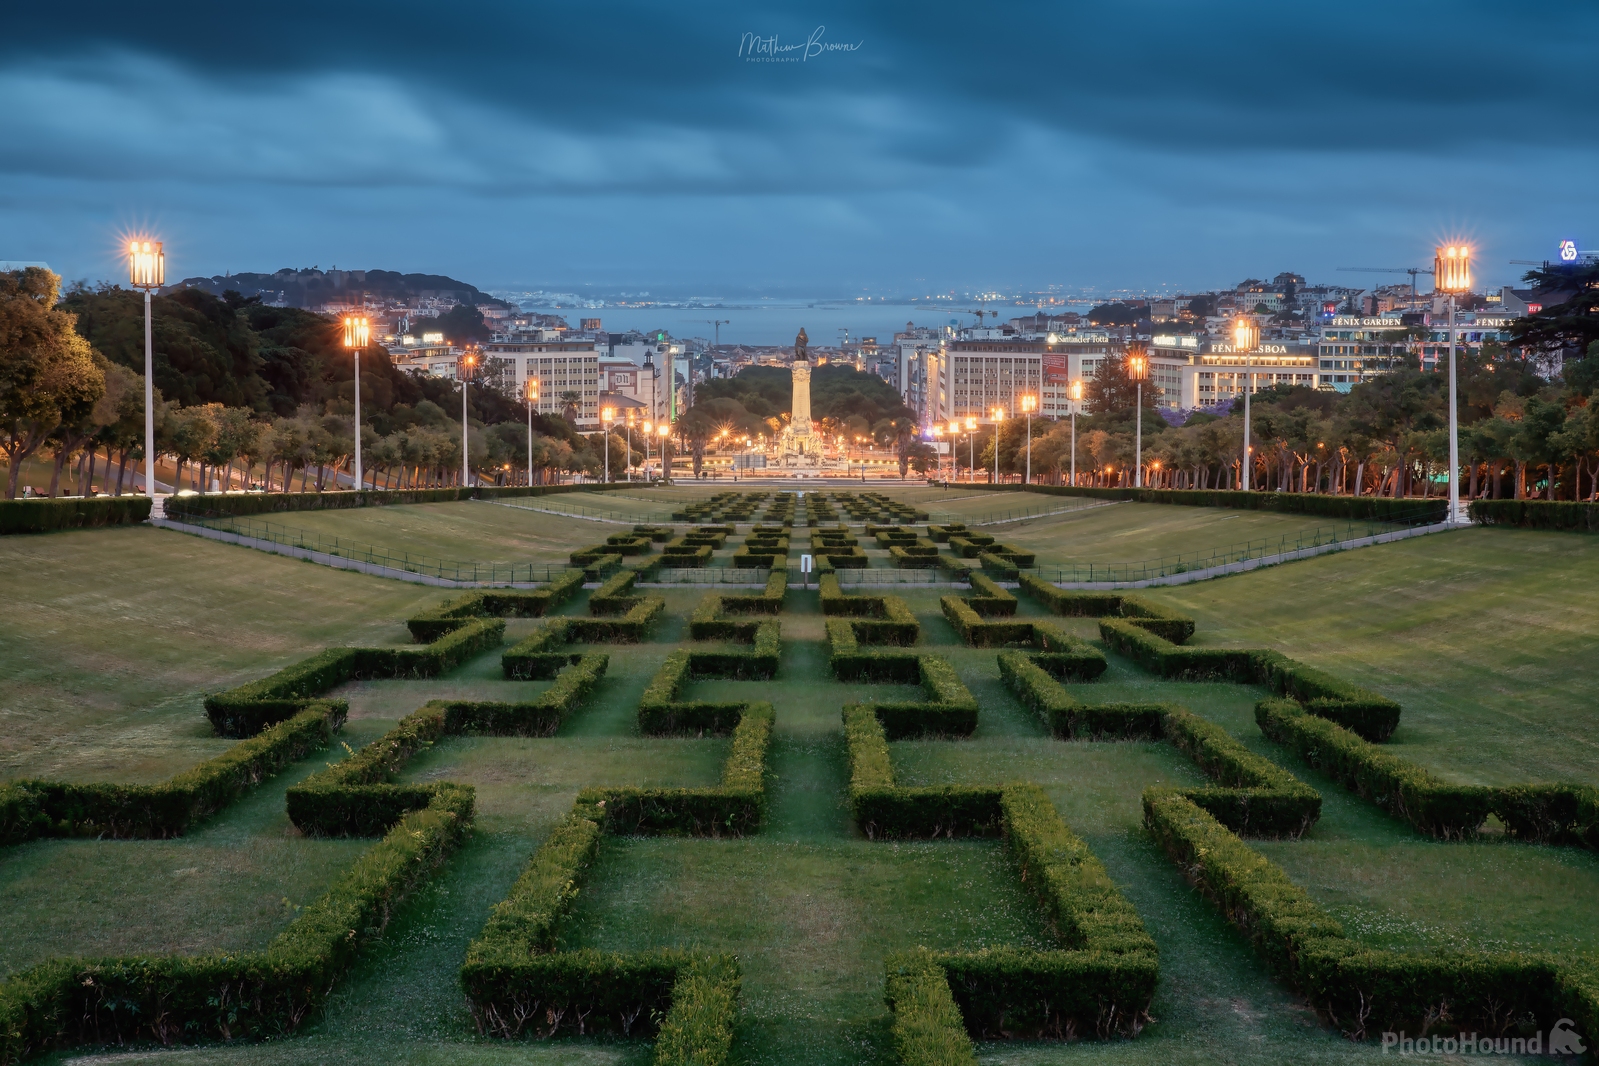 Image of Miradouro Parque Eduardo VII by Mathew Browne